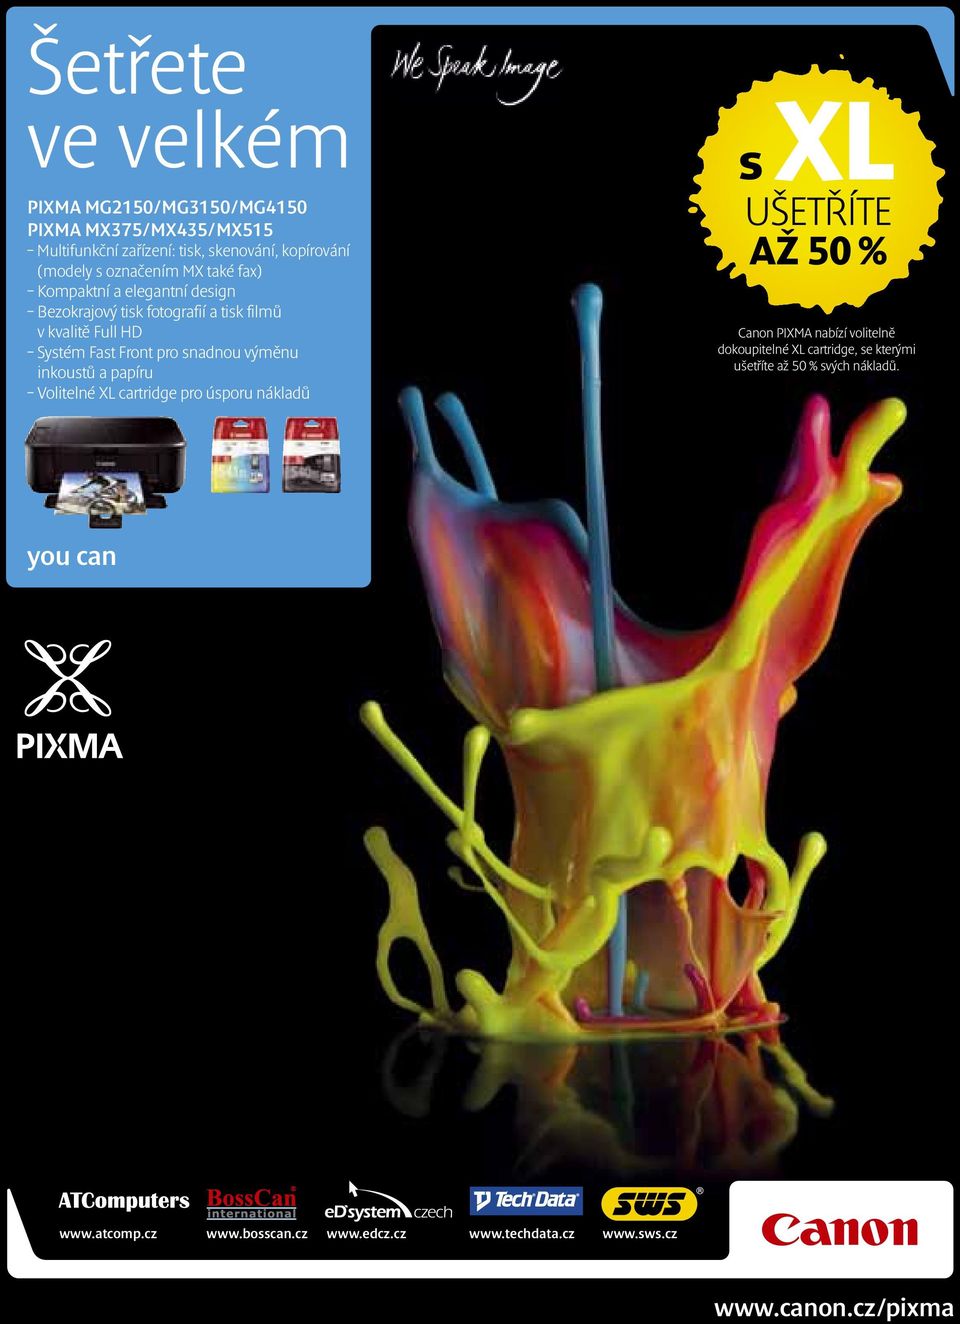 Volitelné XL cartridge pro úsporu nákladů s XL UŠETŘÍTE AŽ 50 % Canon PIXMA nabízí volitelně dokoupitelné XL cartridge, se kterými ušetříte až 50 %